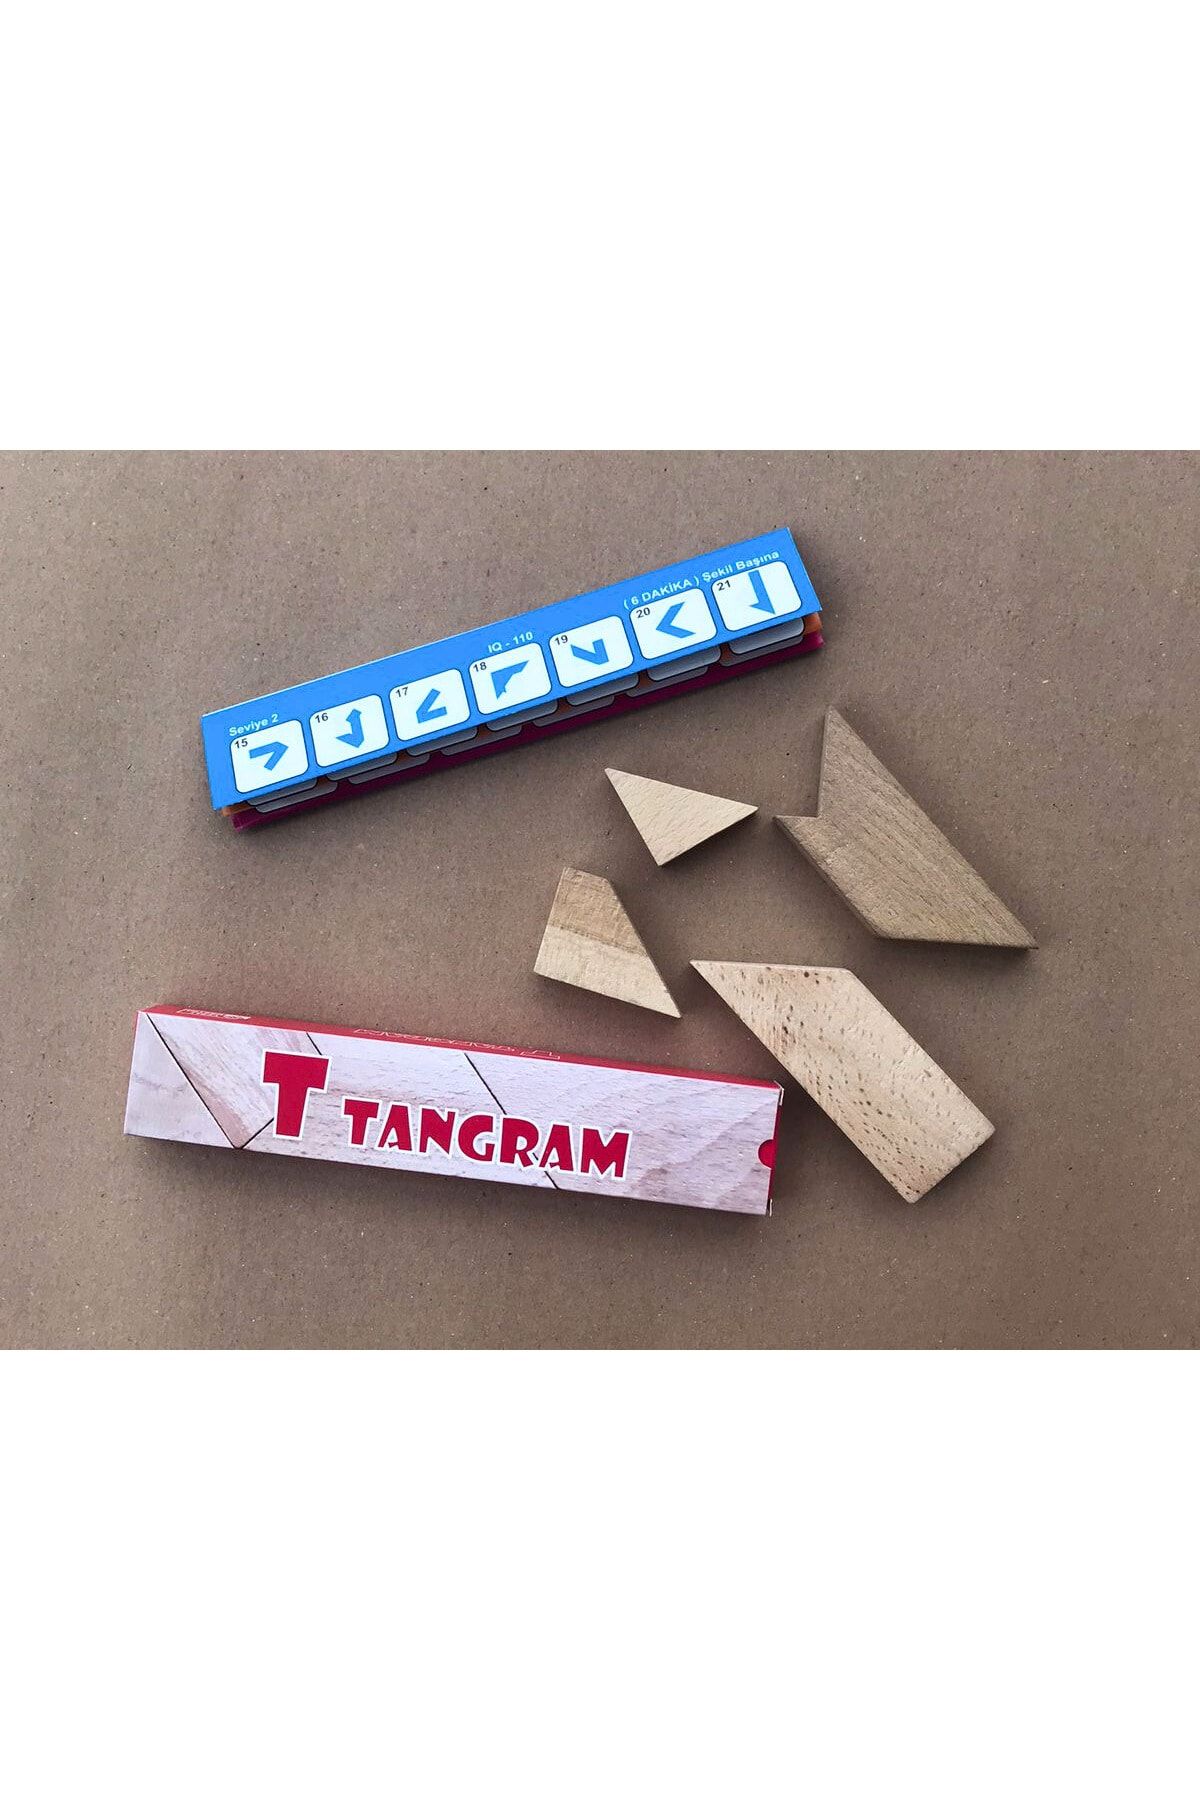 SoyluAhşap Ahşap Oyuncak - Tangram - Ahşap Tangram - Yaratıcı Oyunlar